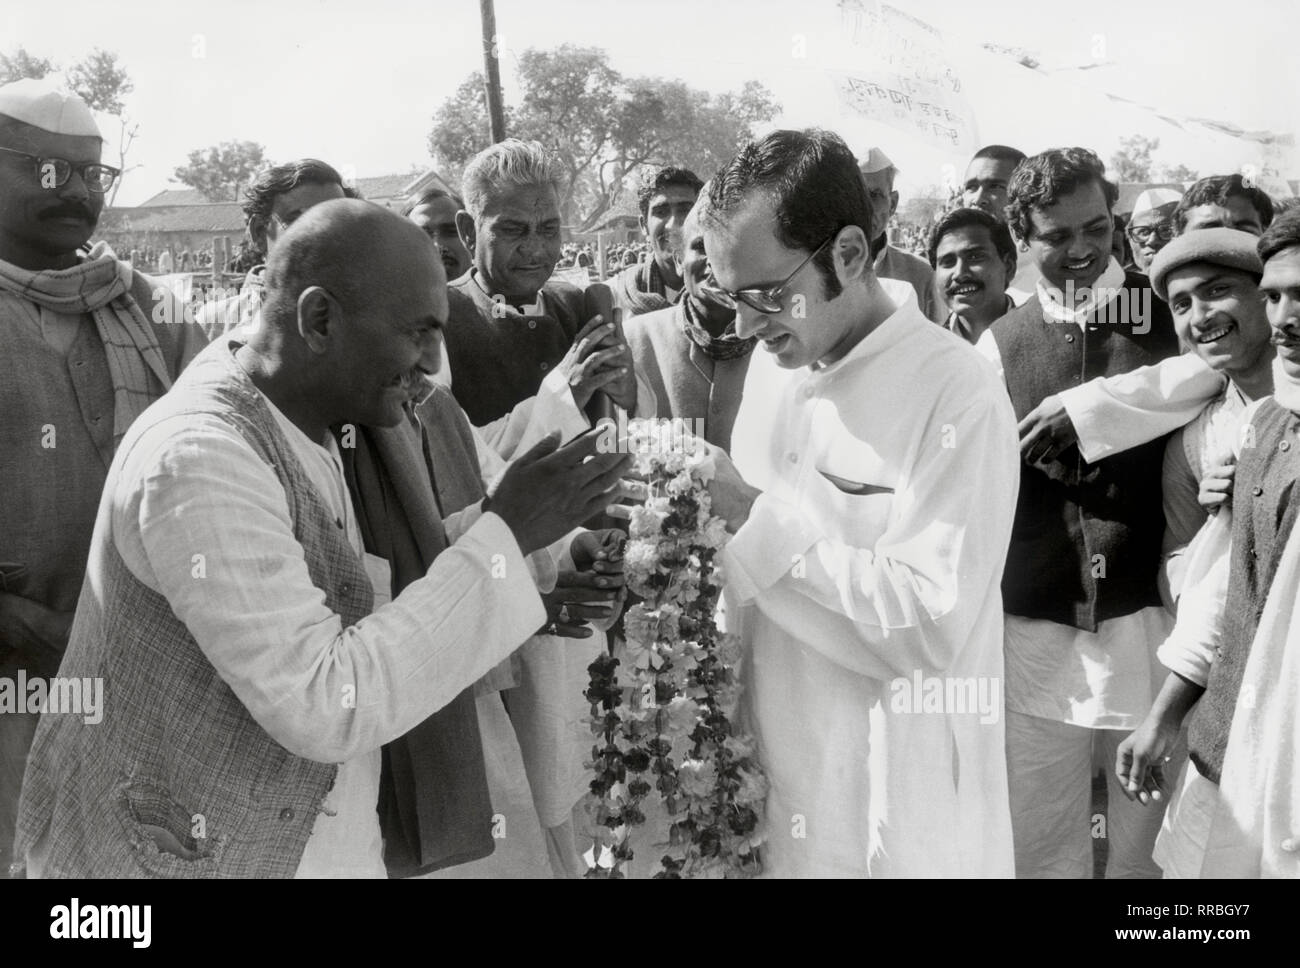 SANJAY GANDHI (Geboren am 14. Dezember 1946 in Neu-Delhi, Delhi; Starb am 23. Juni 1980 in Neu-Delhi), Indischer Politiker, Sohn von Indira Gandhi. Während des Notstands in Indien Mitte der 1970er Jahre war er politisch einflussreich. Fünf Monate vor seinem Tod wurde er ins indische Parlament gewählt. Photo: SANJAY GANDHI (1977) / Sanjay Gandhi (Born on 14 December 1946; Died on 23 June1980), Indian politician, the younger son of Prime Minister Indira Gandhi. He died in an aeroplane crash shortly after his mother's return to power. He had been elected to the Parliament of India five months bef Stock Photo